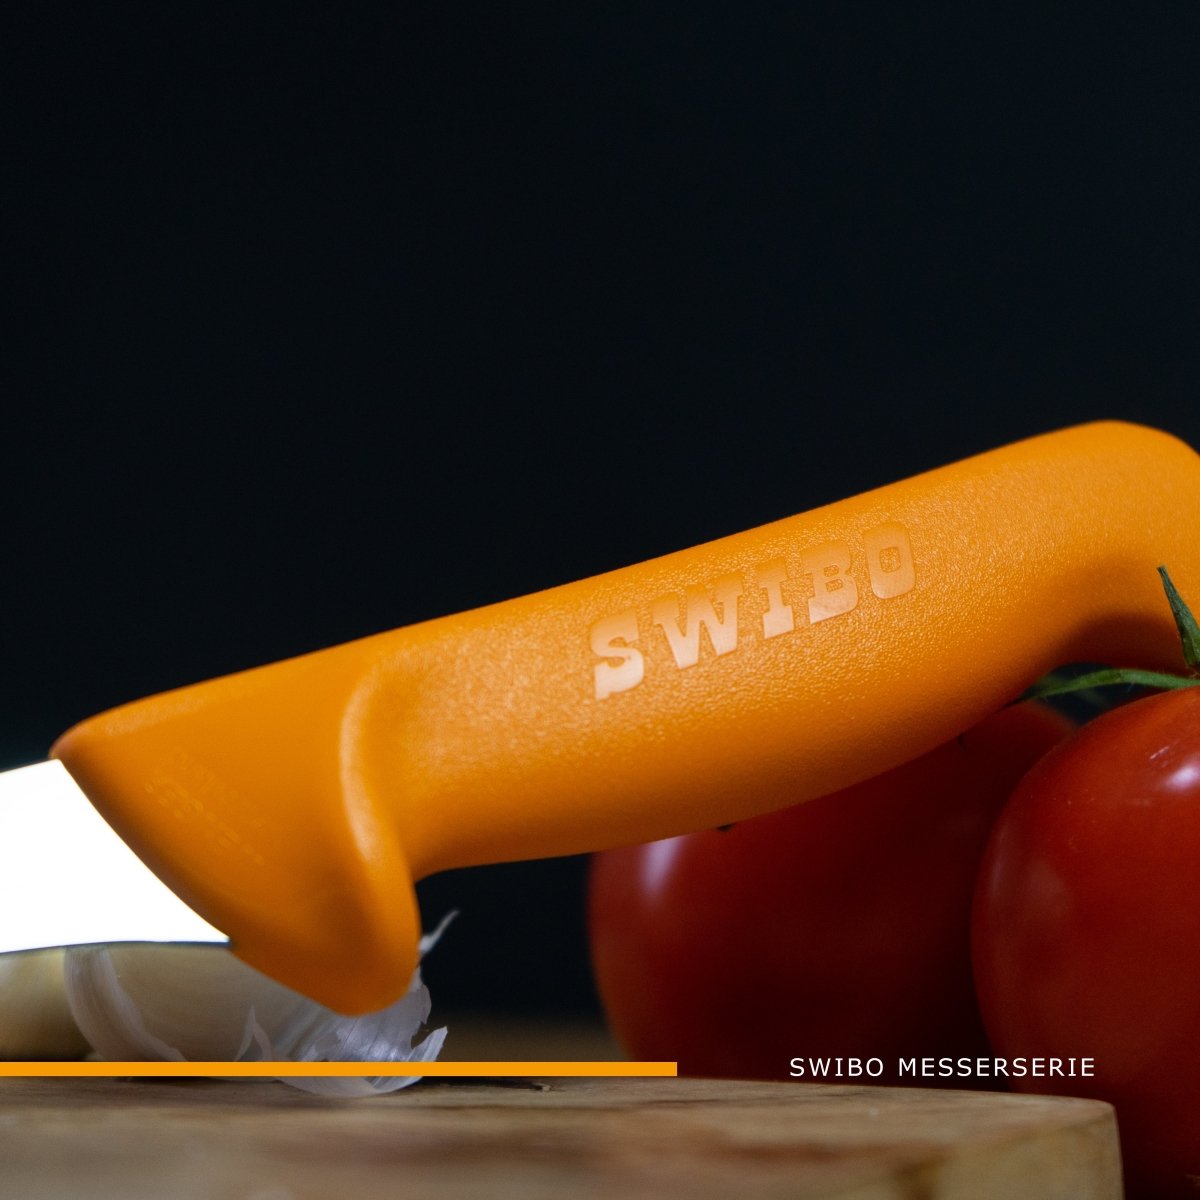 Swibo Ausbeinmesser mit gebogener Klinge - BERUFSMESSER.de